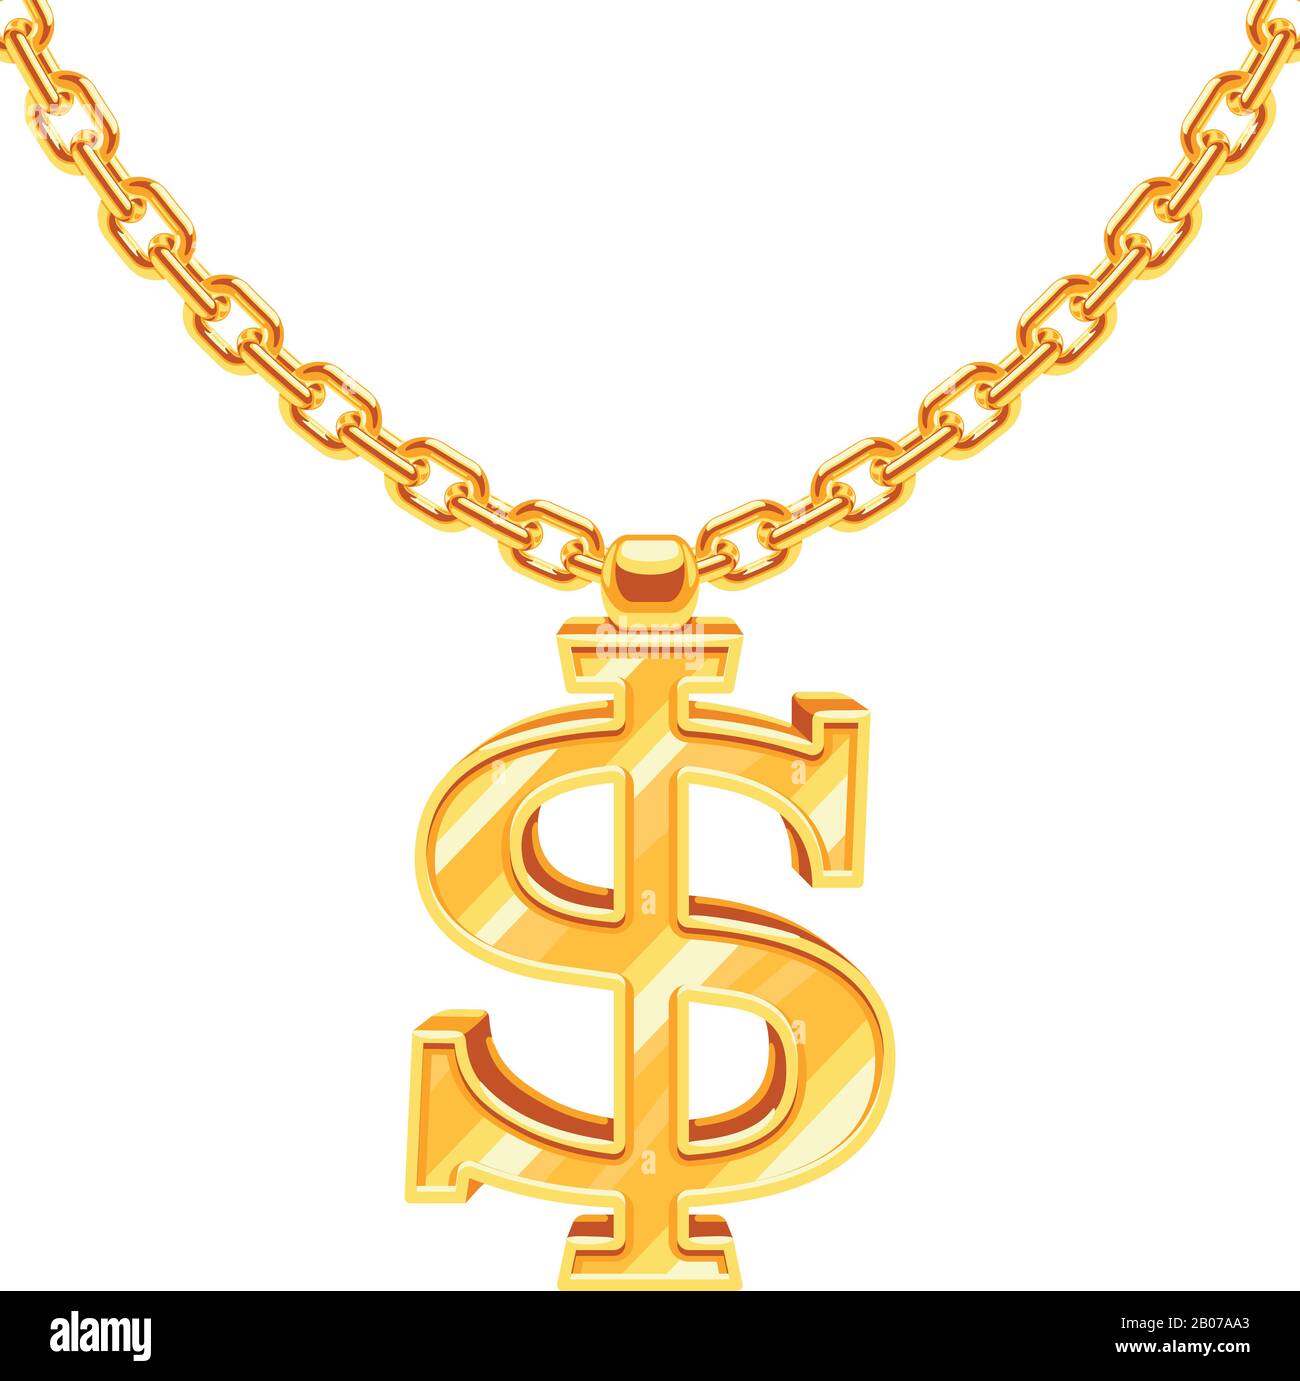 Golddollar auf goldenem Kettenvektor Hip-Hop-Kette im Rap Stil. Amerikanische Geld- und Finanz-Luxus-Illustration Stock Vektor